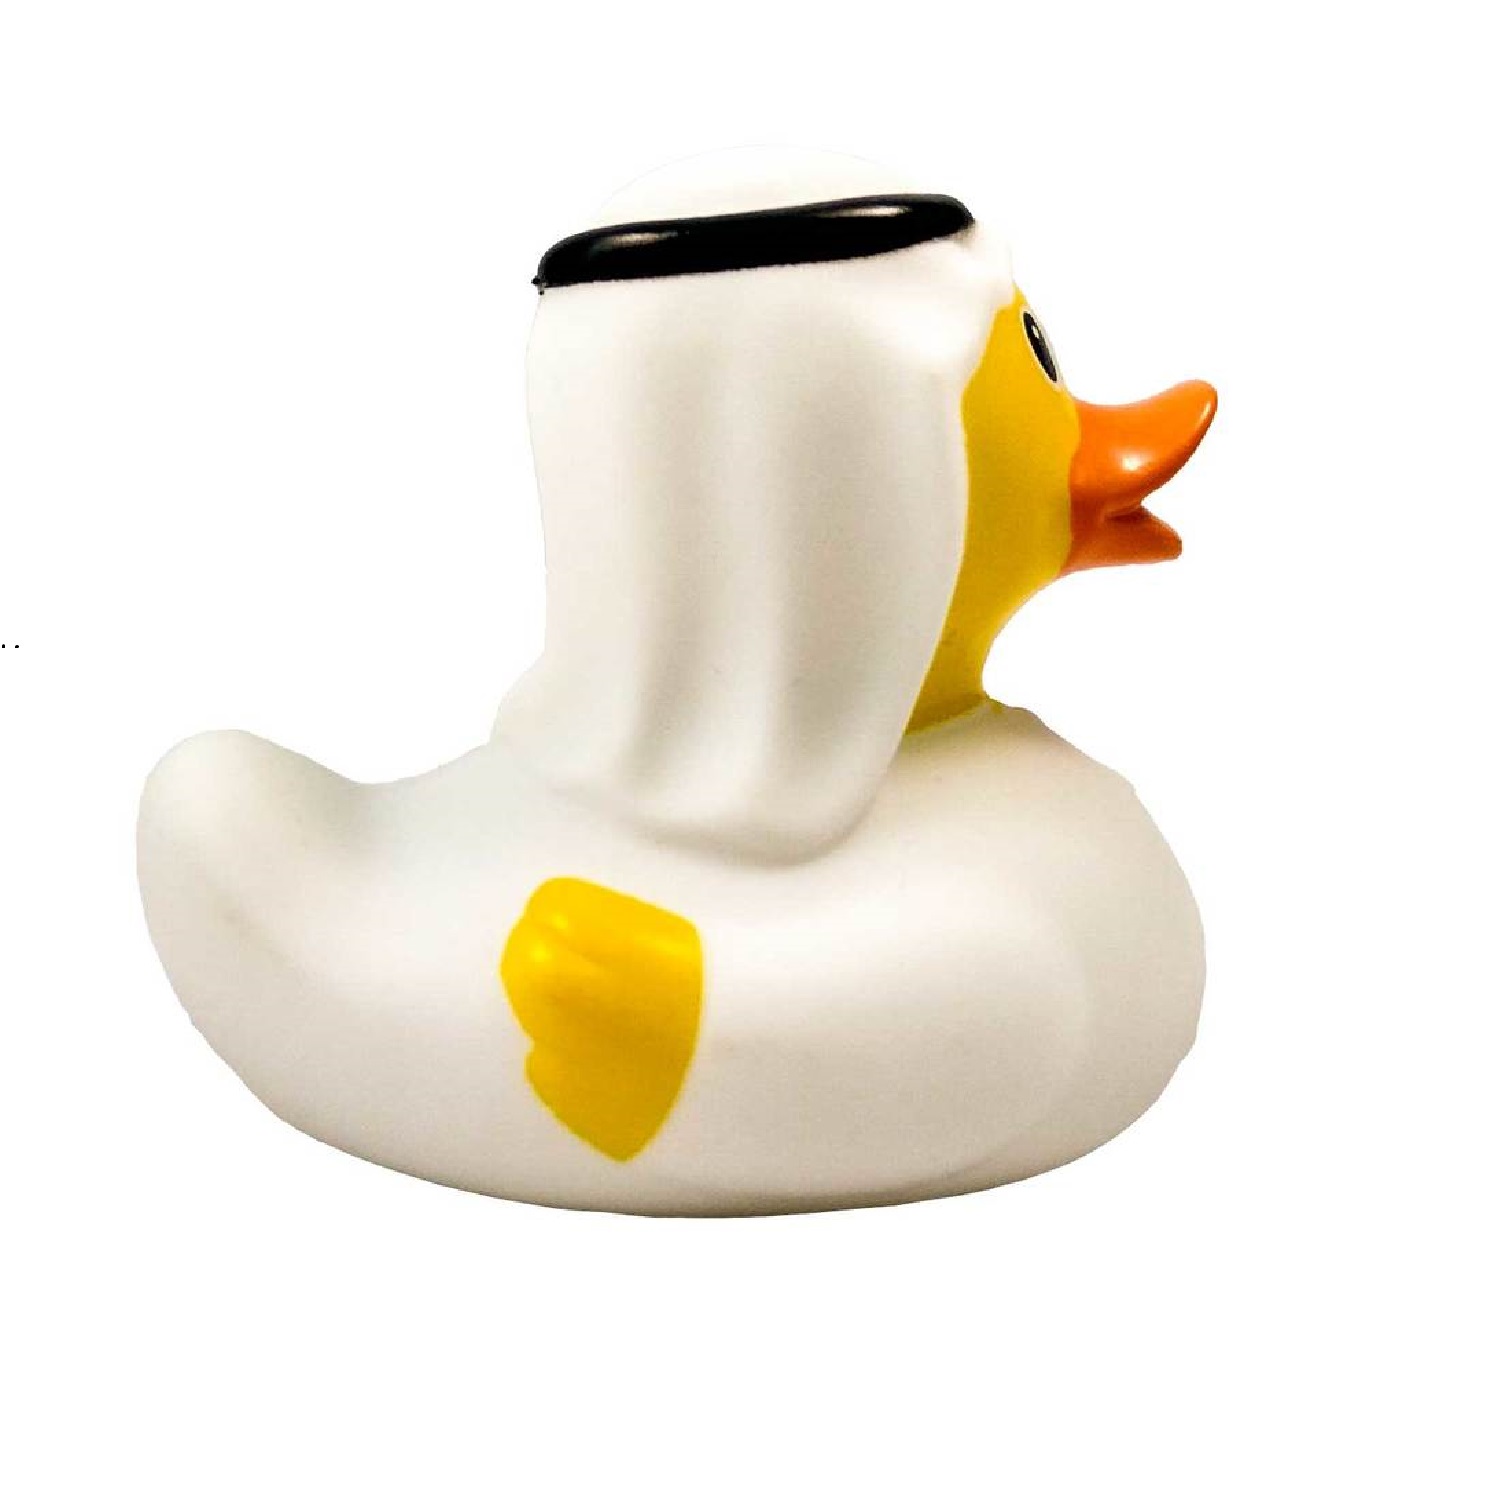 Игрушка Funny ducks для ванной Шейх уточка 1853 - фото 3